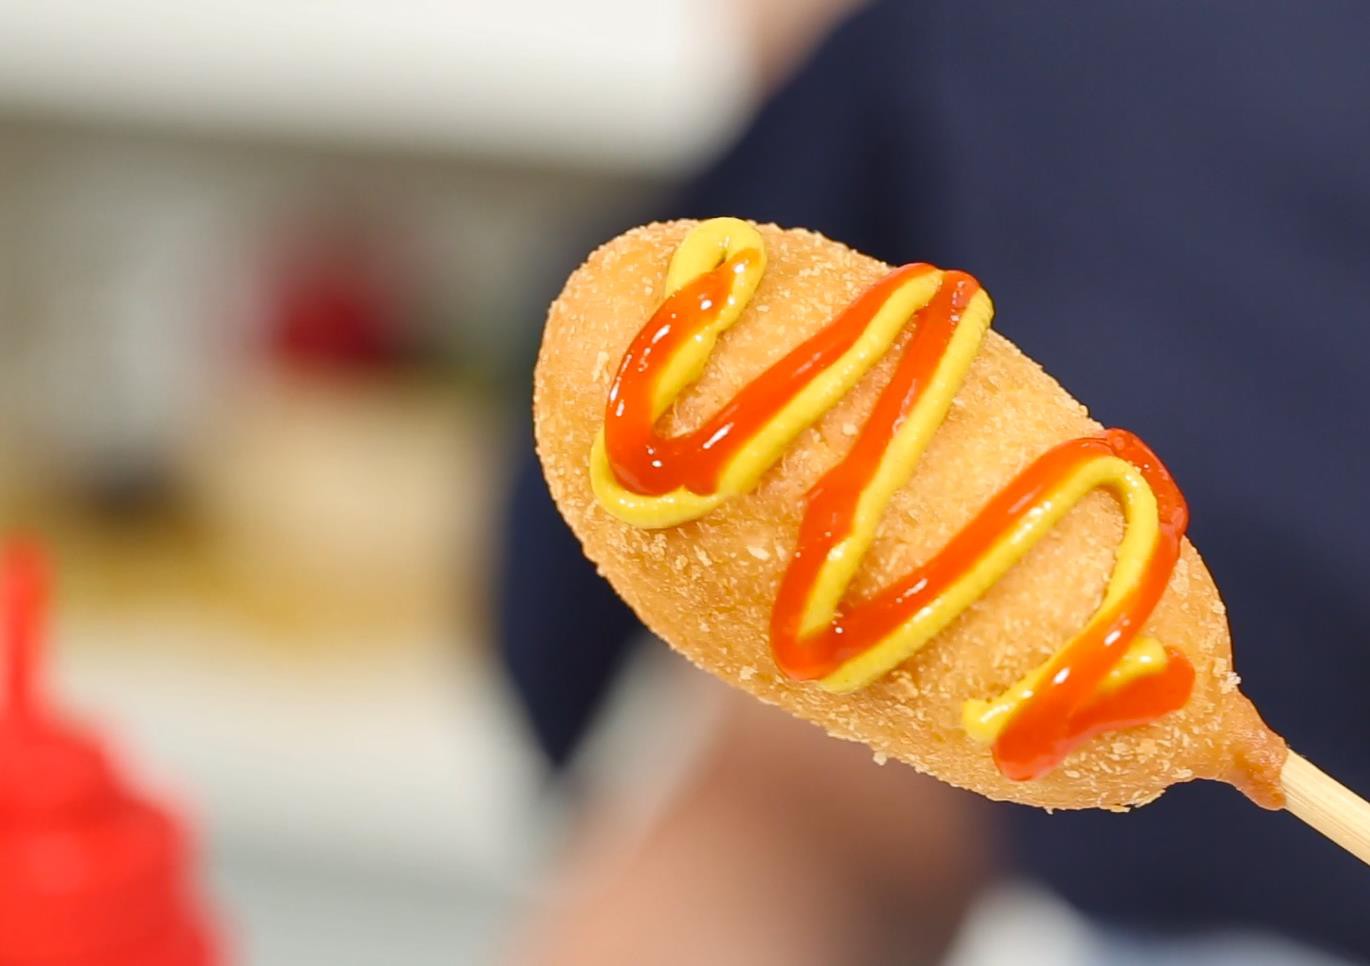 Seoul’s Hotdog là gì mà bạn nhất định phải ăn thử? - Ảnh 3.